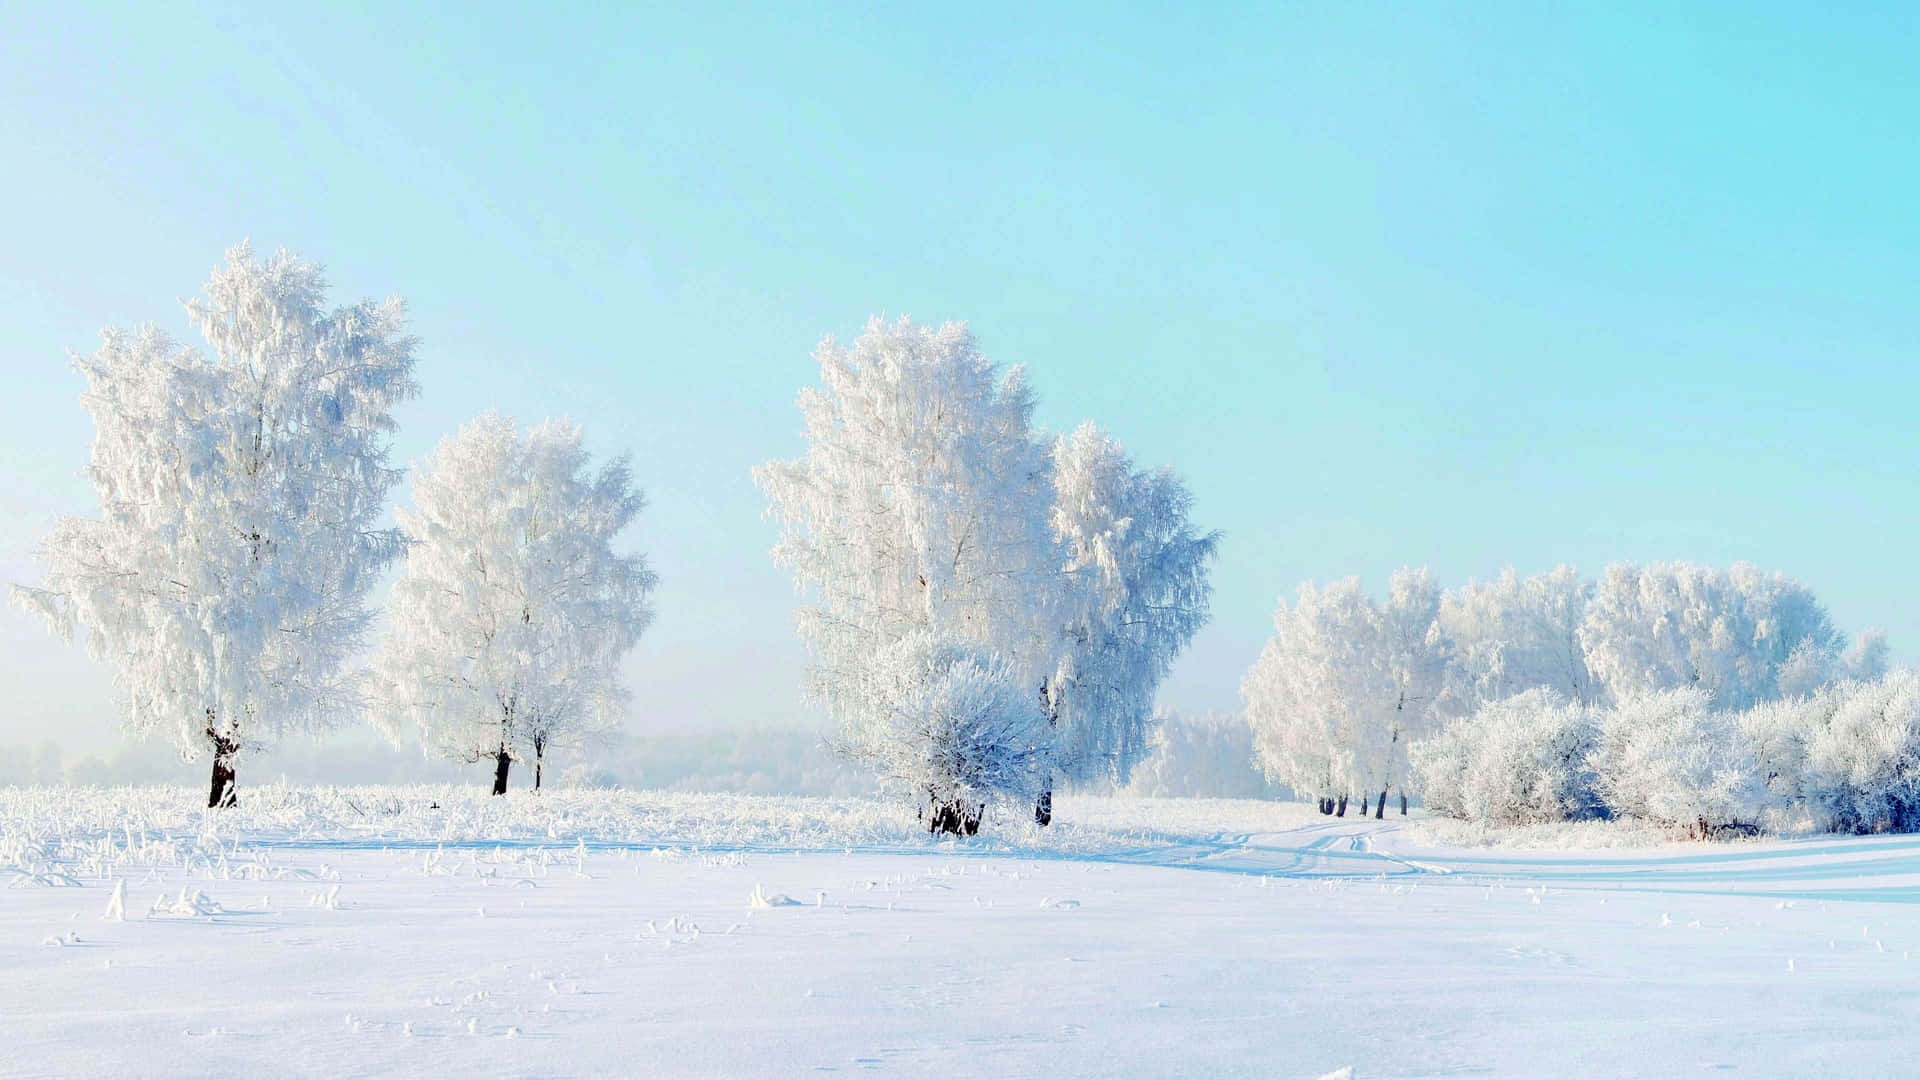 An icy winter wonderland